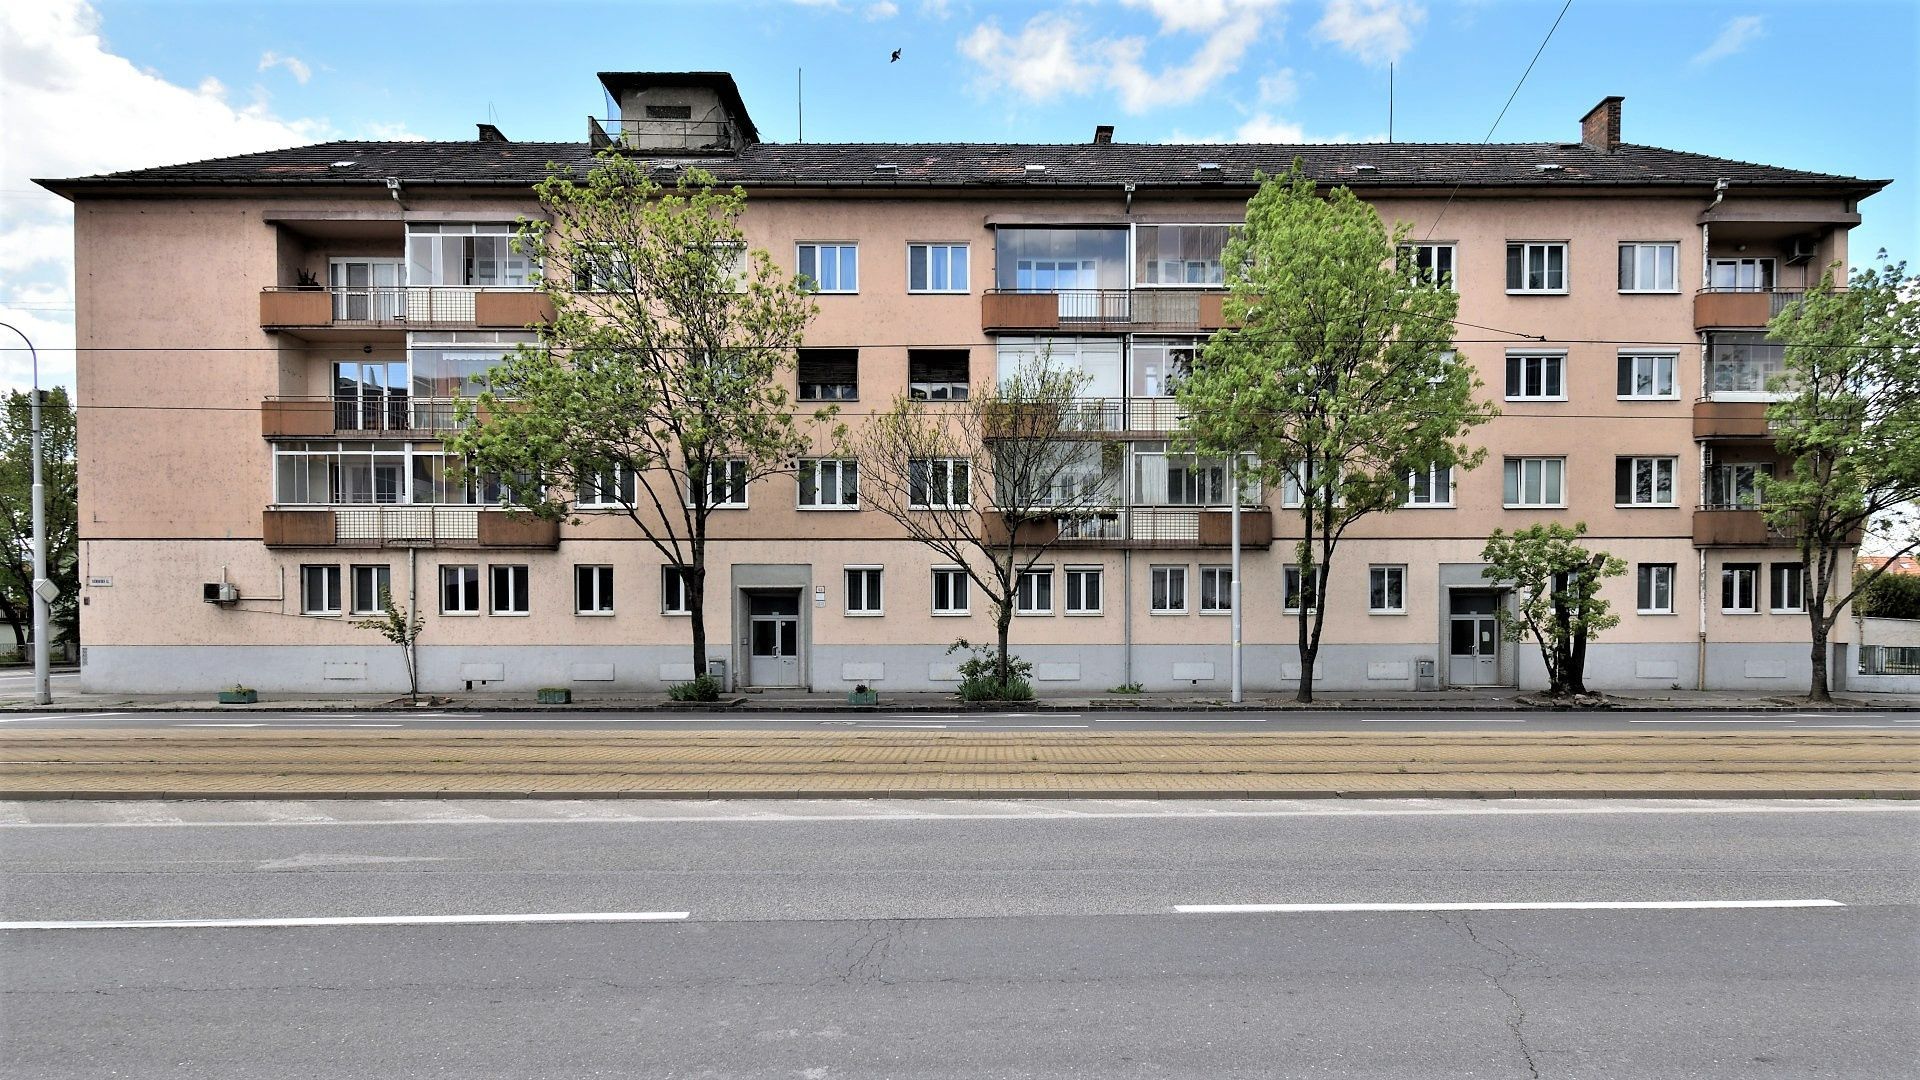 PRENÁJOM: 3,5 izb. byt, Vajnorská 67, oproti nákupnému centru VIVO, Bratislava III – TOP PONUKA 4870 | Roweservices s.r.o